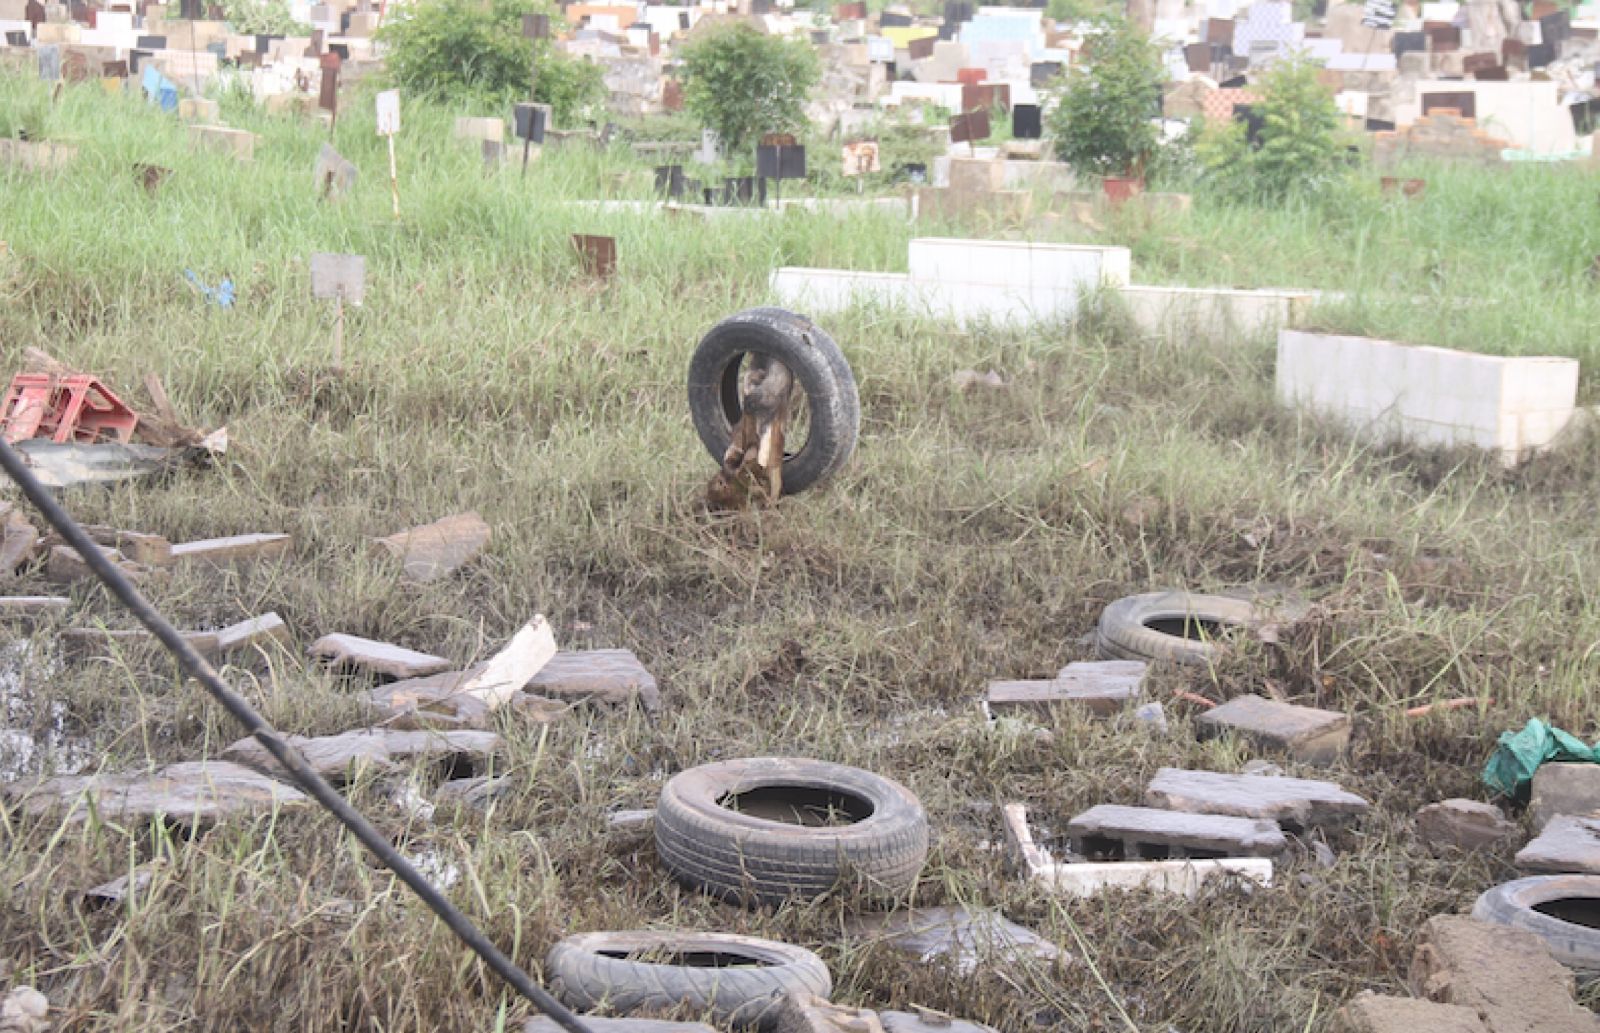 Inondations : Retour au cimetière de Pikine